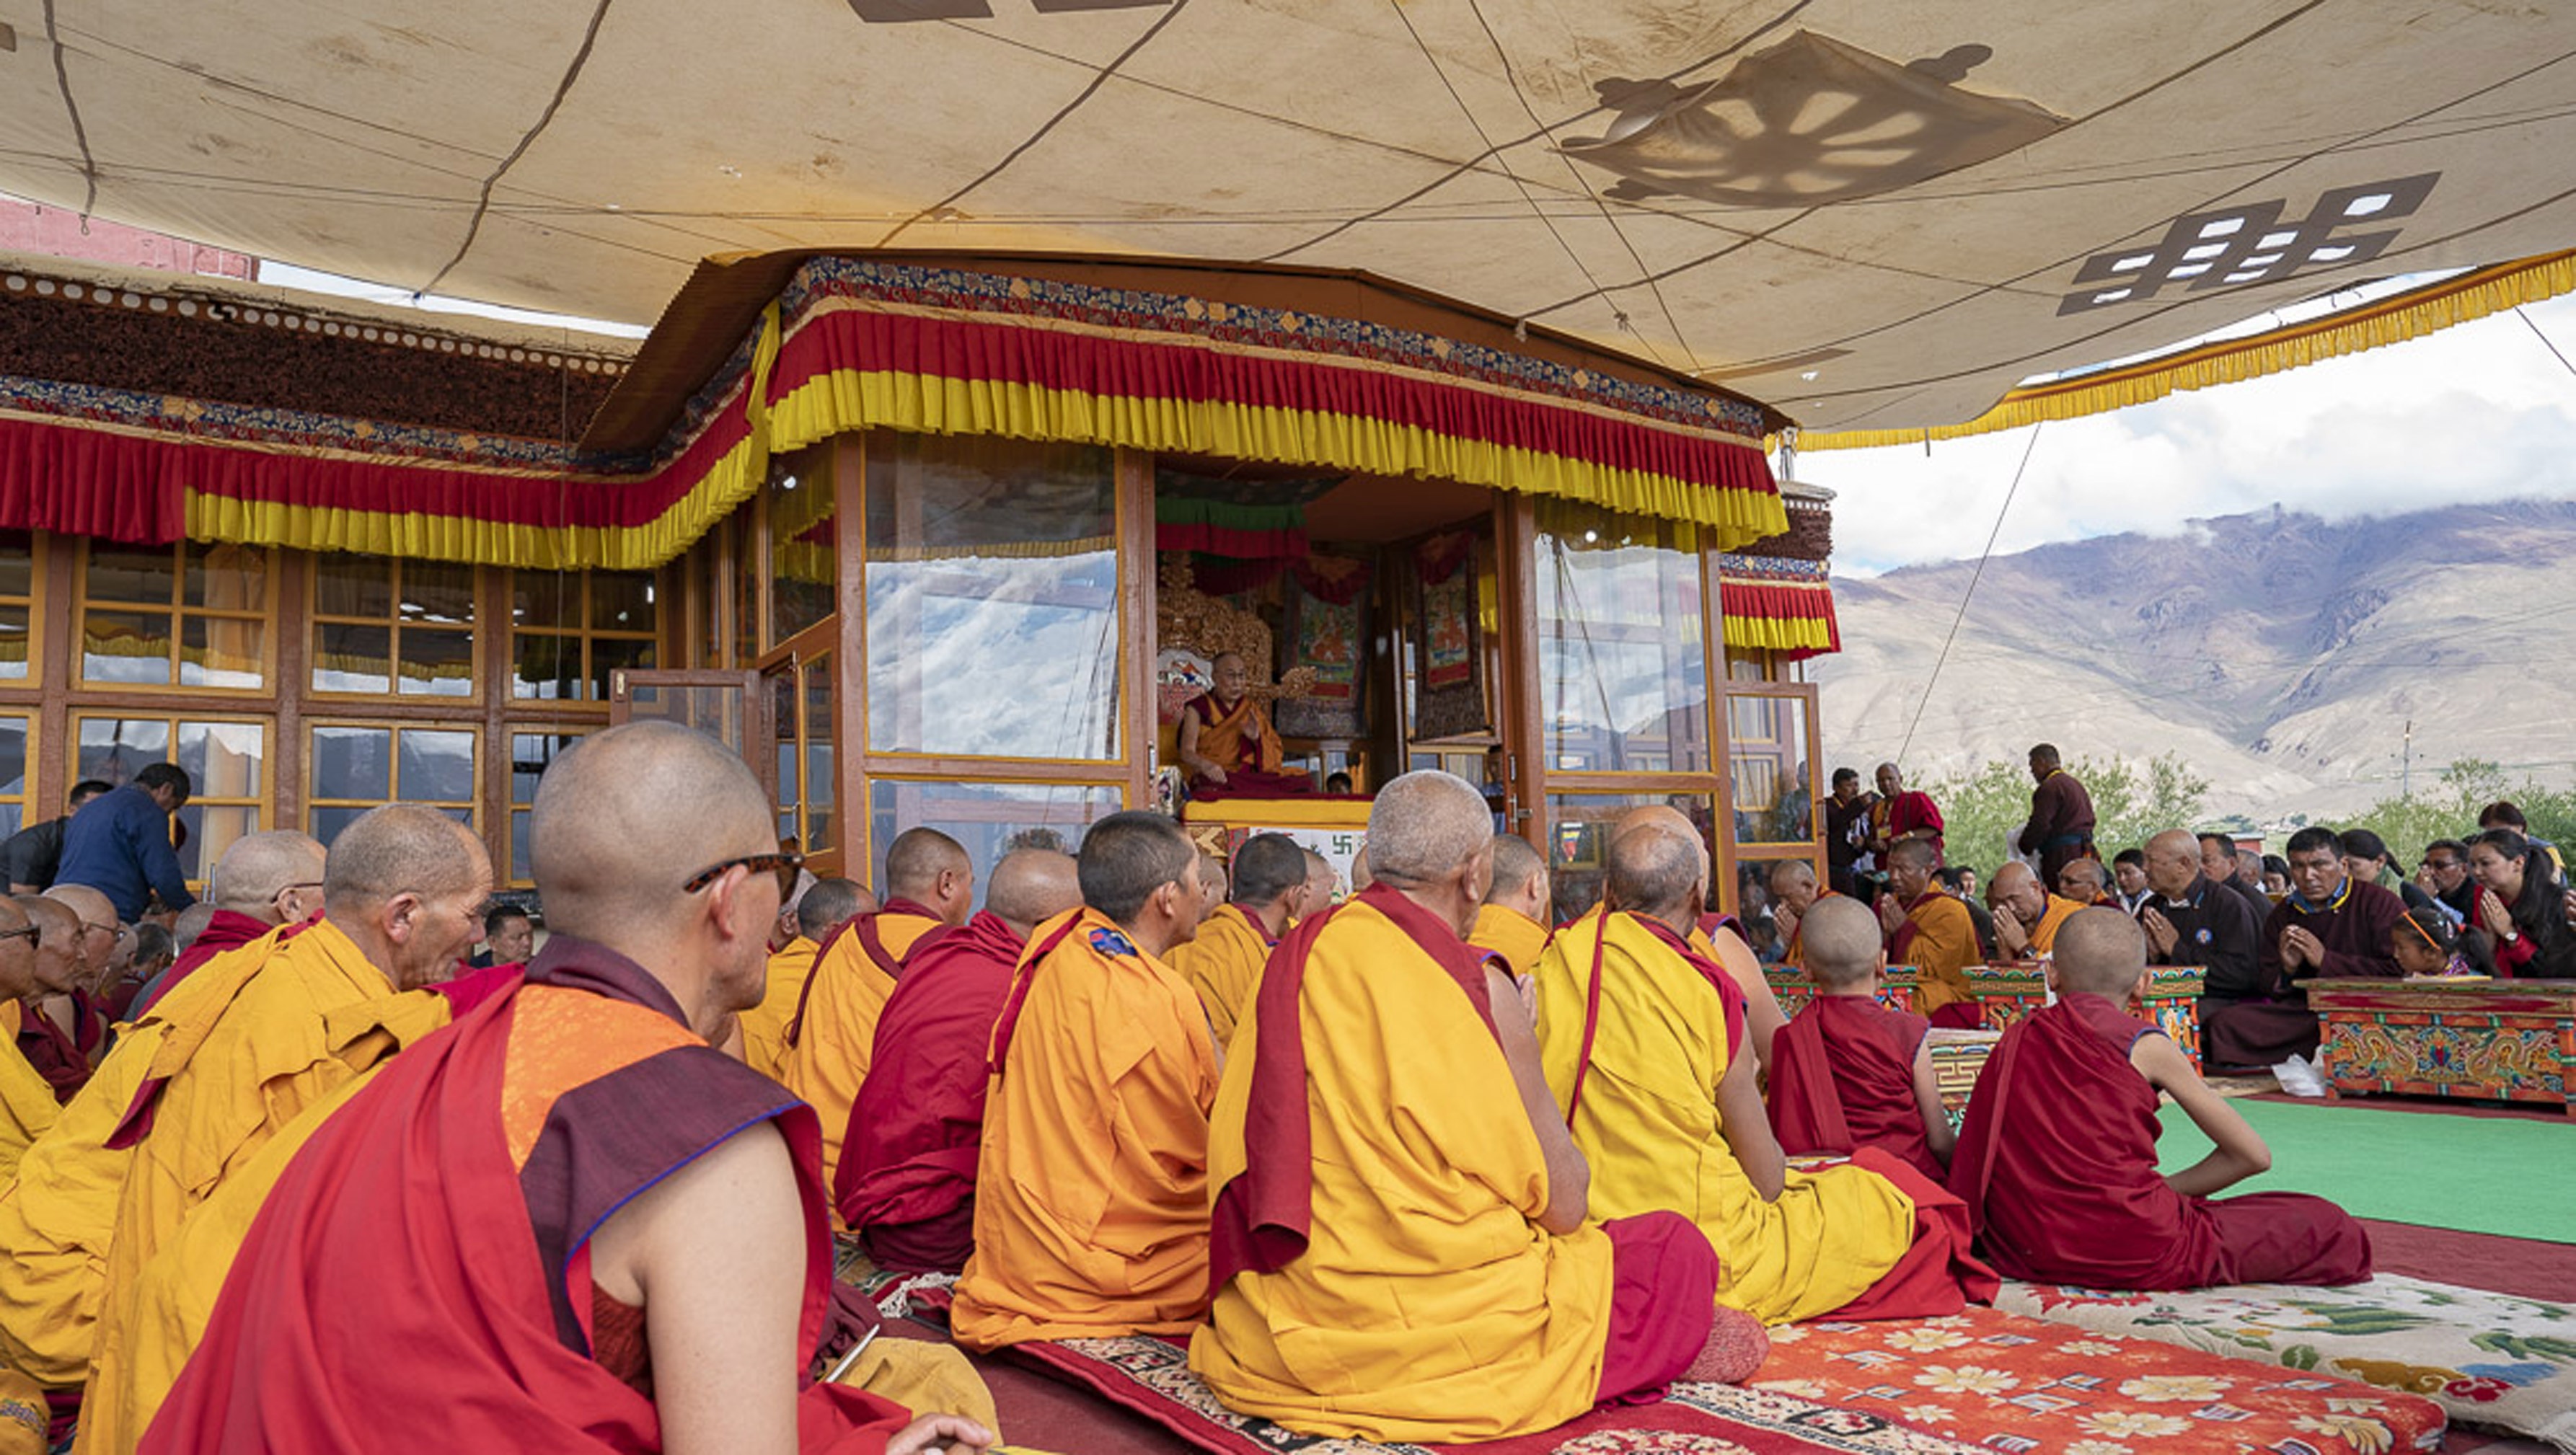 Ein Blick auf die Bühne während der Unterweisung von Seiner Heiligkeit dem Dalai Lama in Padum, Zanskar, J&K, Indien am 22. Juli 2018. Foto: Tenzin Choejor